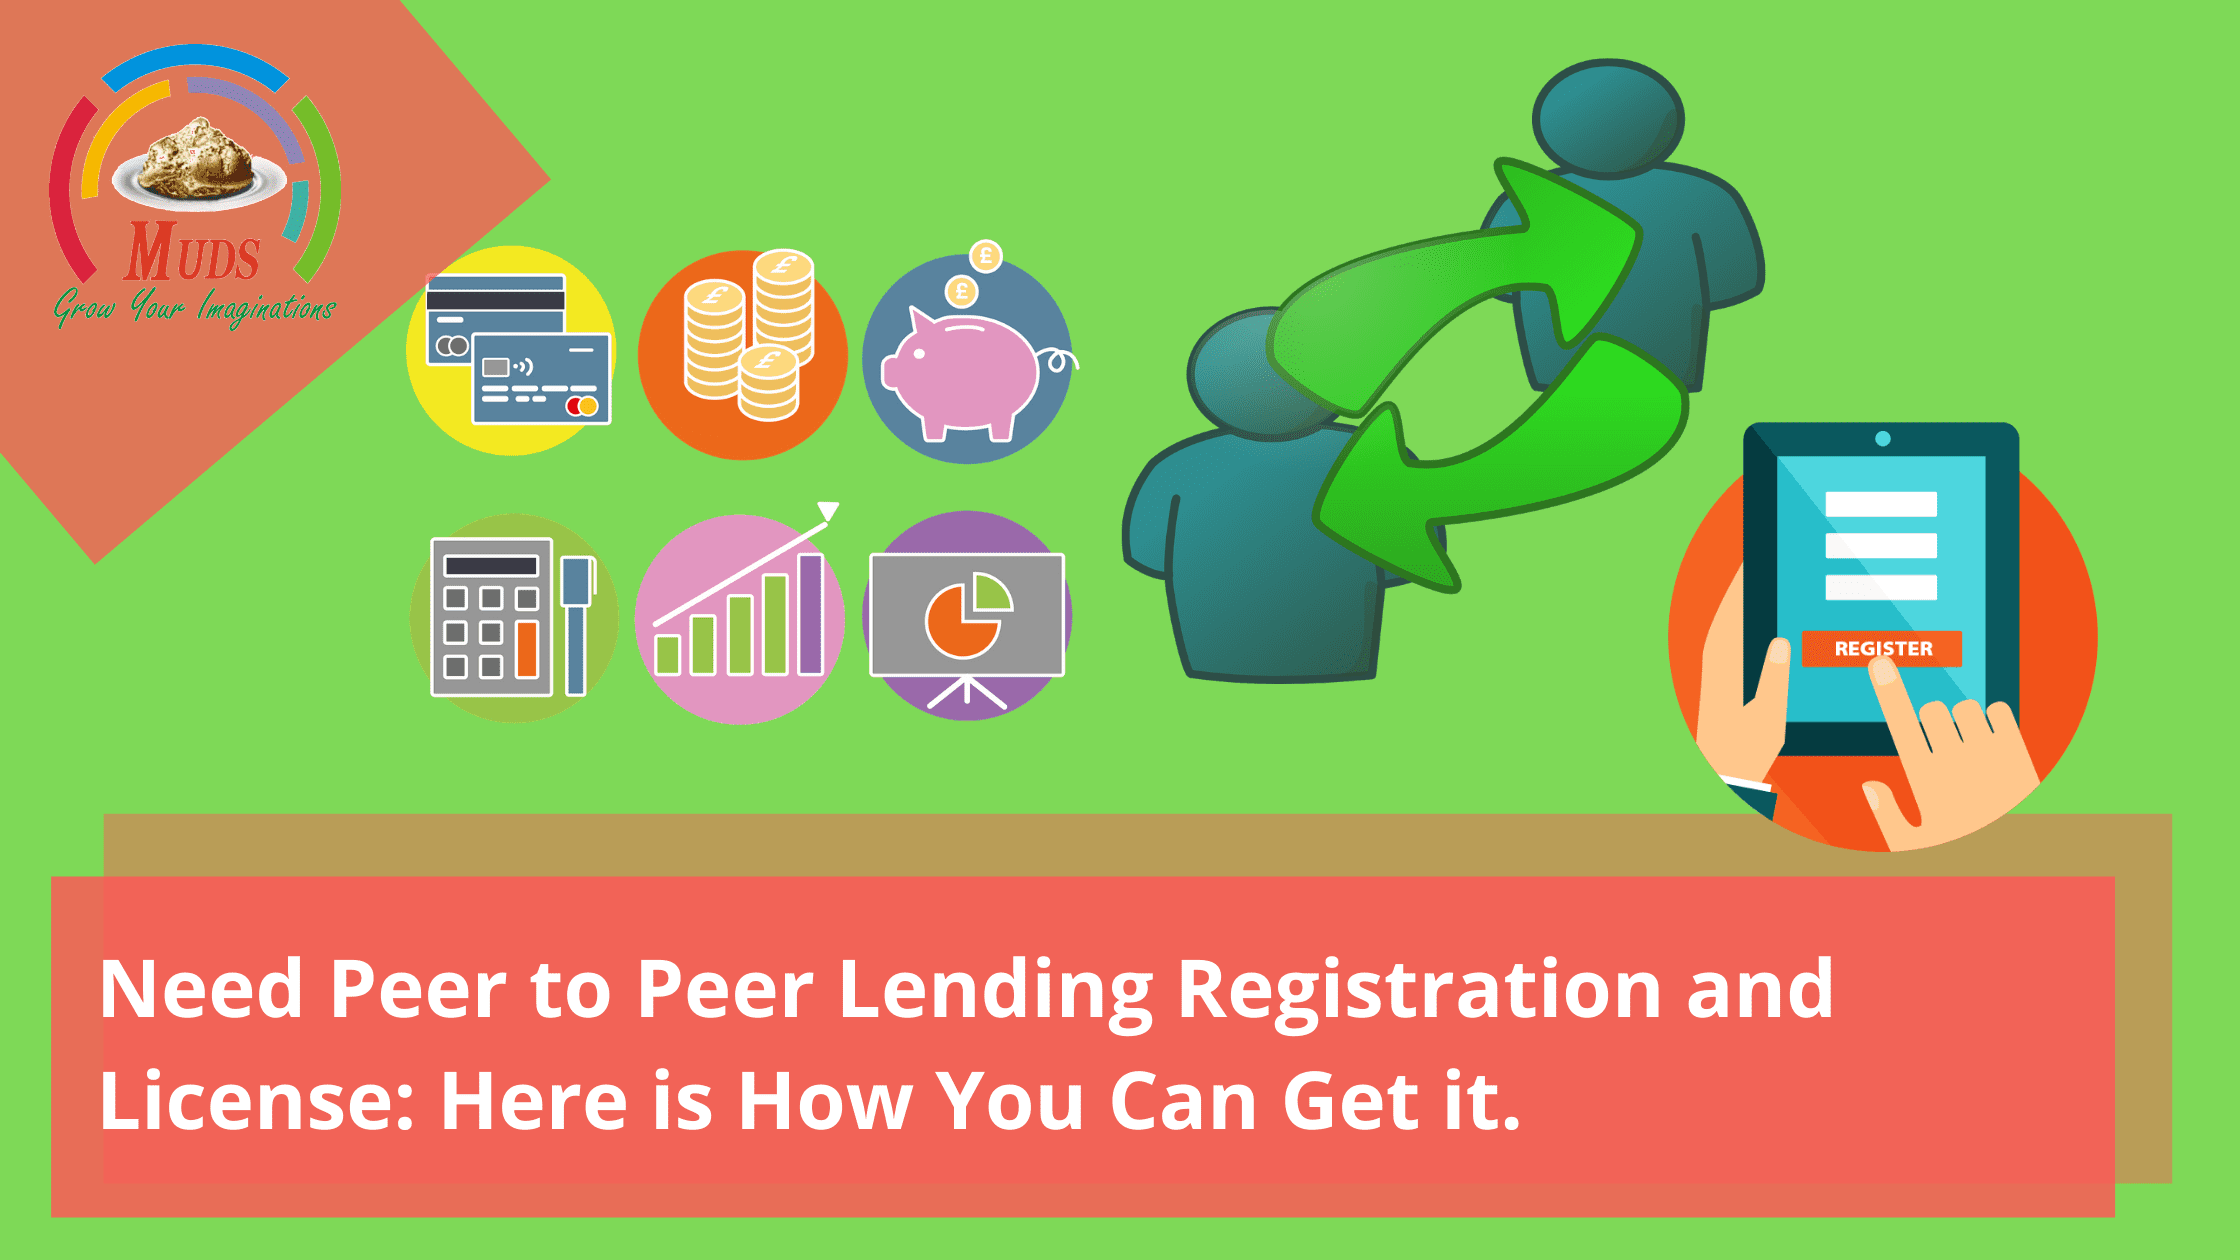 Need Peer to Peer Lending Registration and License